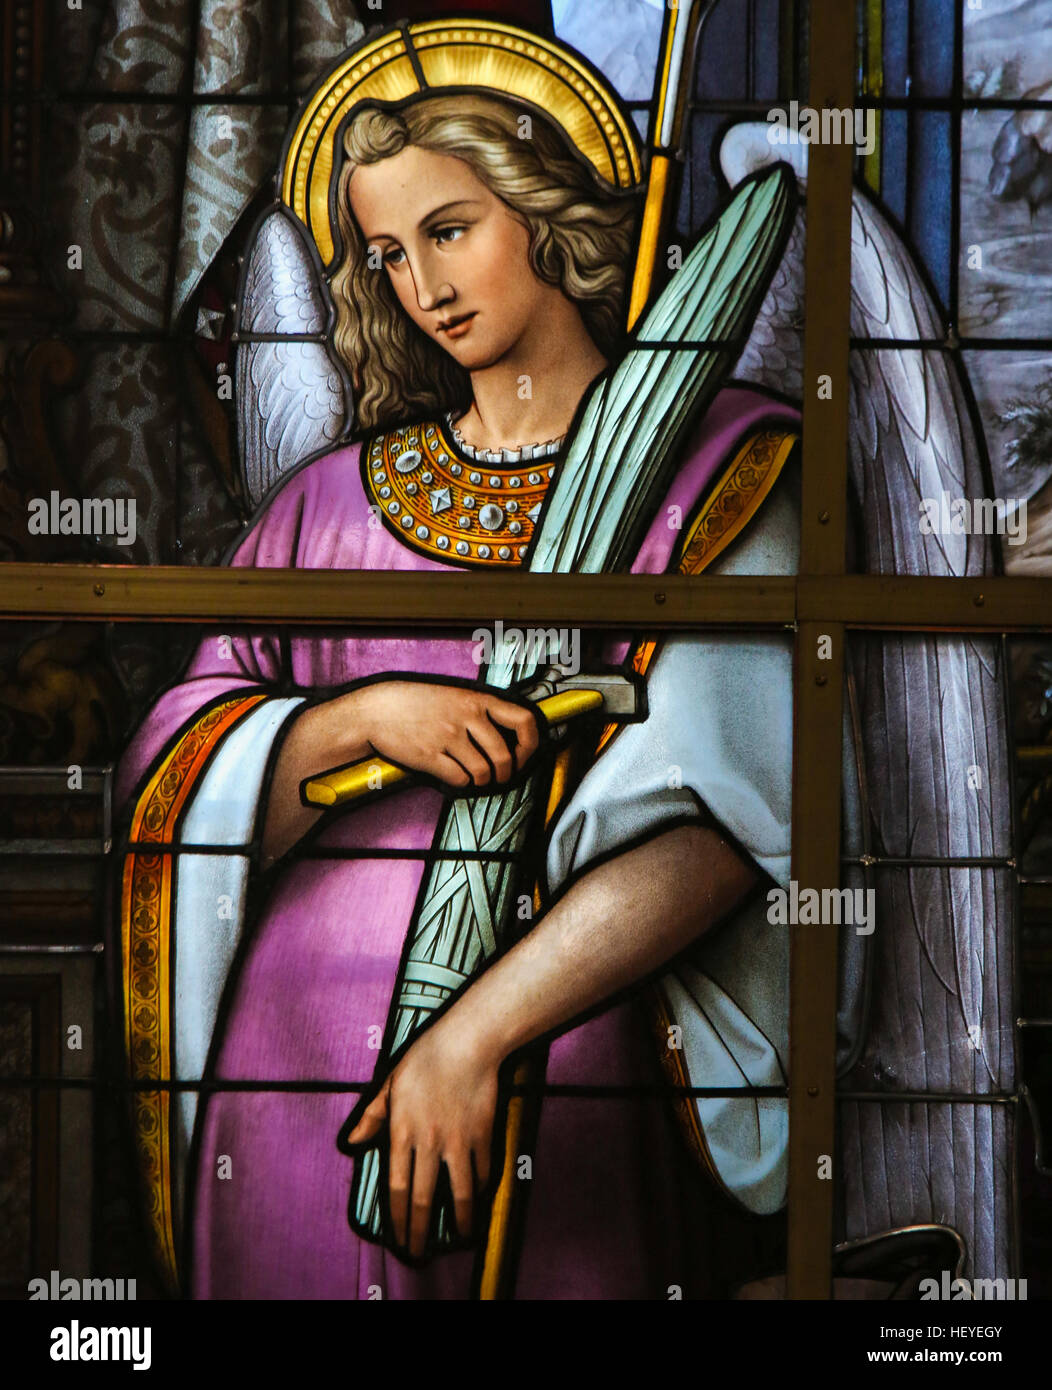 Glasmalerei in Saint Nicholas Church, Gent, Belgien, zeigt eine Allegorie auf das Leiden Jesu, ein Engel hält die Arma Christi oder der Inst Stockfoto